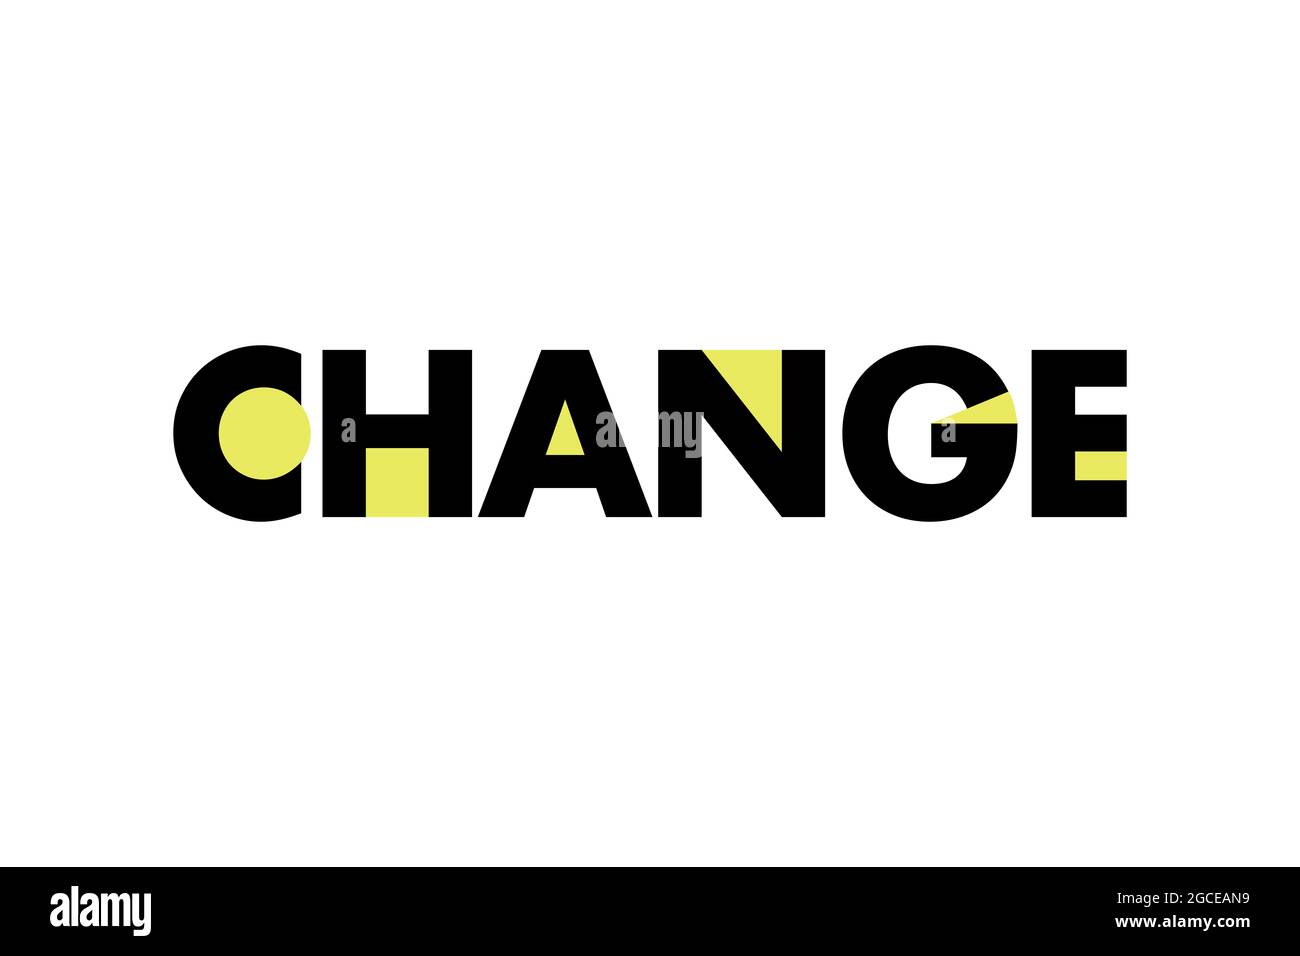 Modernes, auffälliges, lebendiges typografisches Design eines Wortes „Change“ mit geometrischen Formen in gelben und schwarzen Farben. Coole, urbane, trendige Grafik Stockfoto